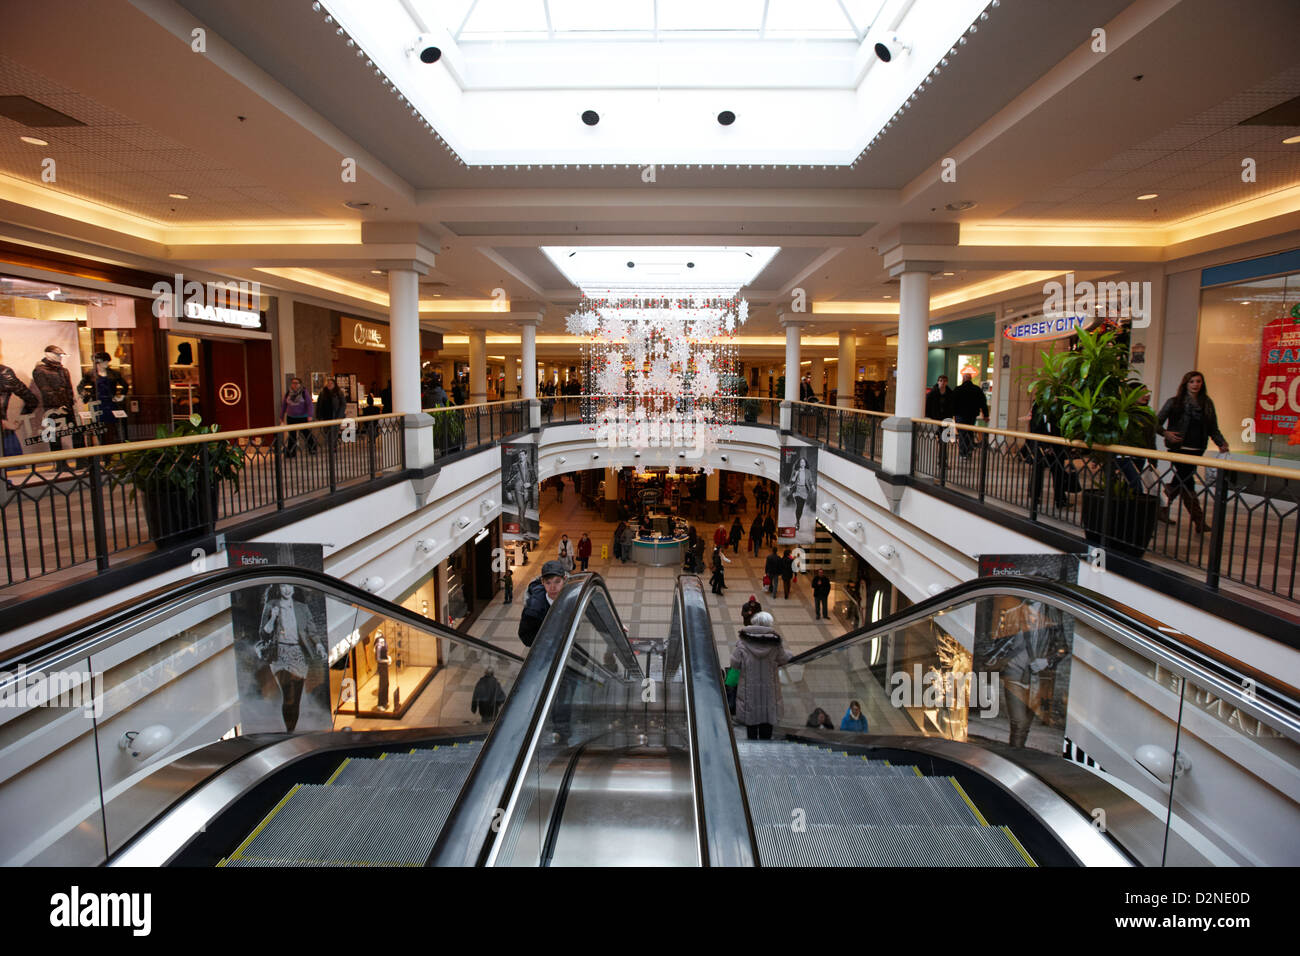 midtown plaza mall with escalators before christmas Saskatoon ...